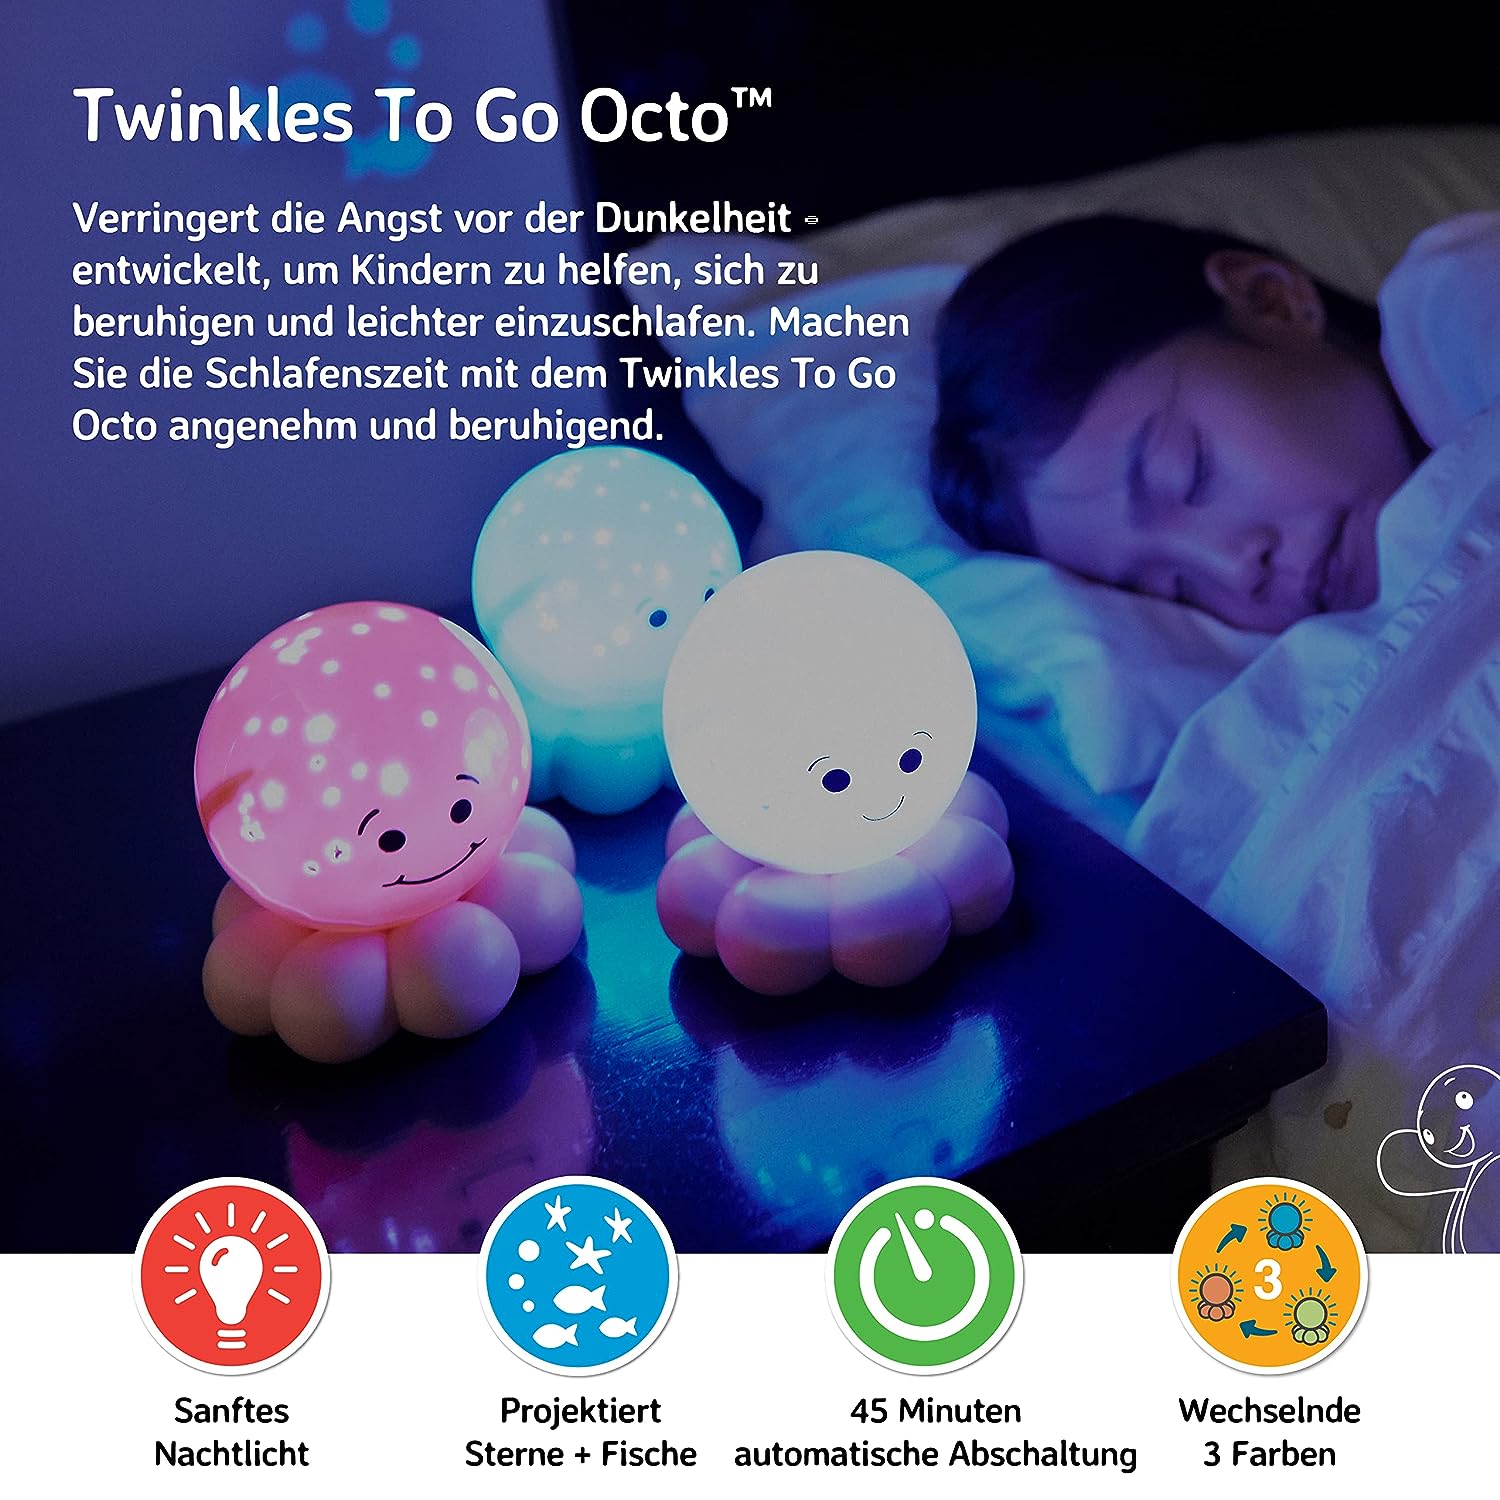 Twinkles-Octo-to-go-Nachtlicht-berlindeluxe-tintenfisch-blau-box-jind-bett